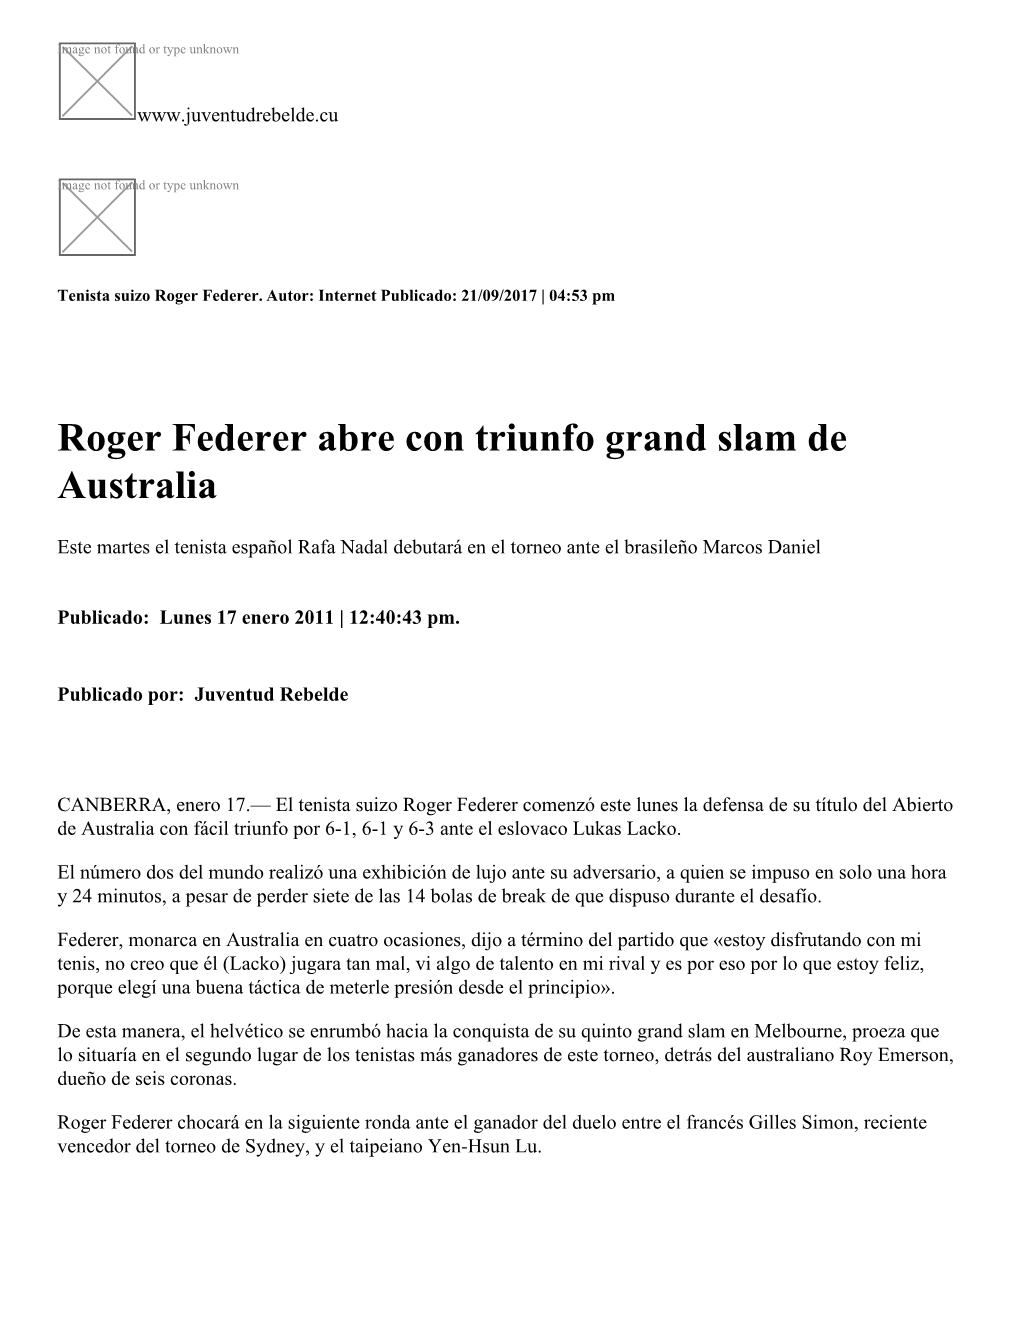 Roger Federer Abre Con Triunfo Grand Slam De Australia